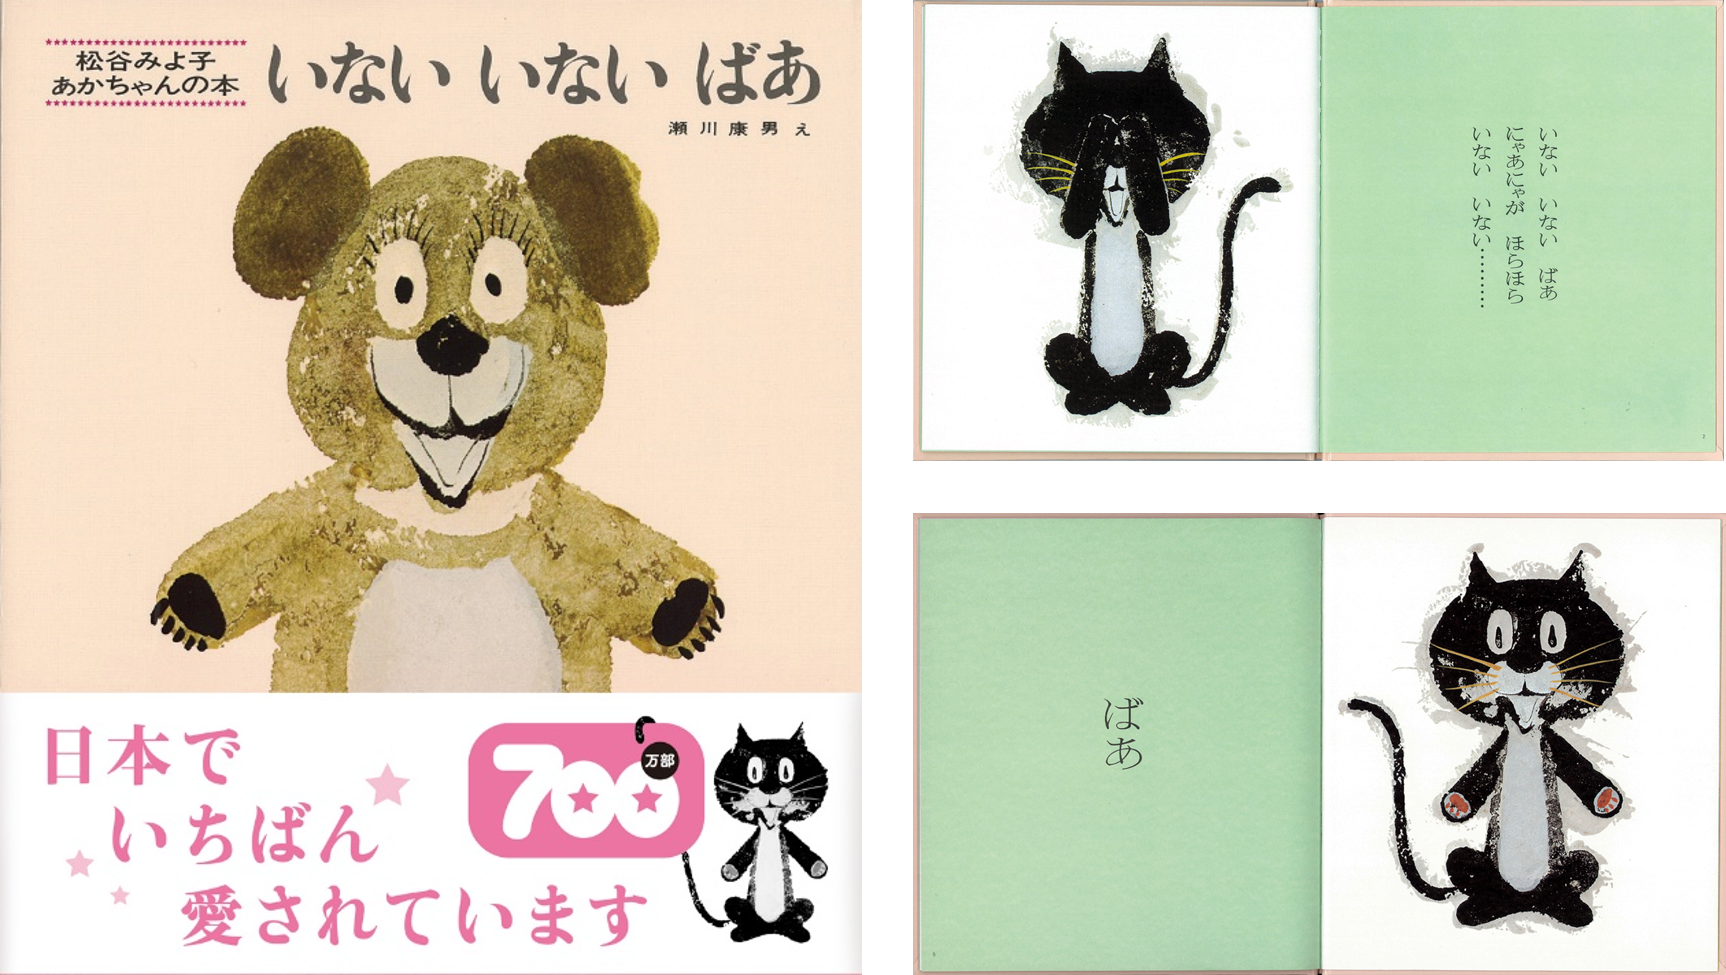 日本で１番売れている絵本※1 童心社『いないいないばあ』累計出版部数